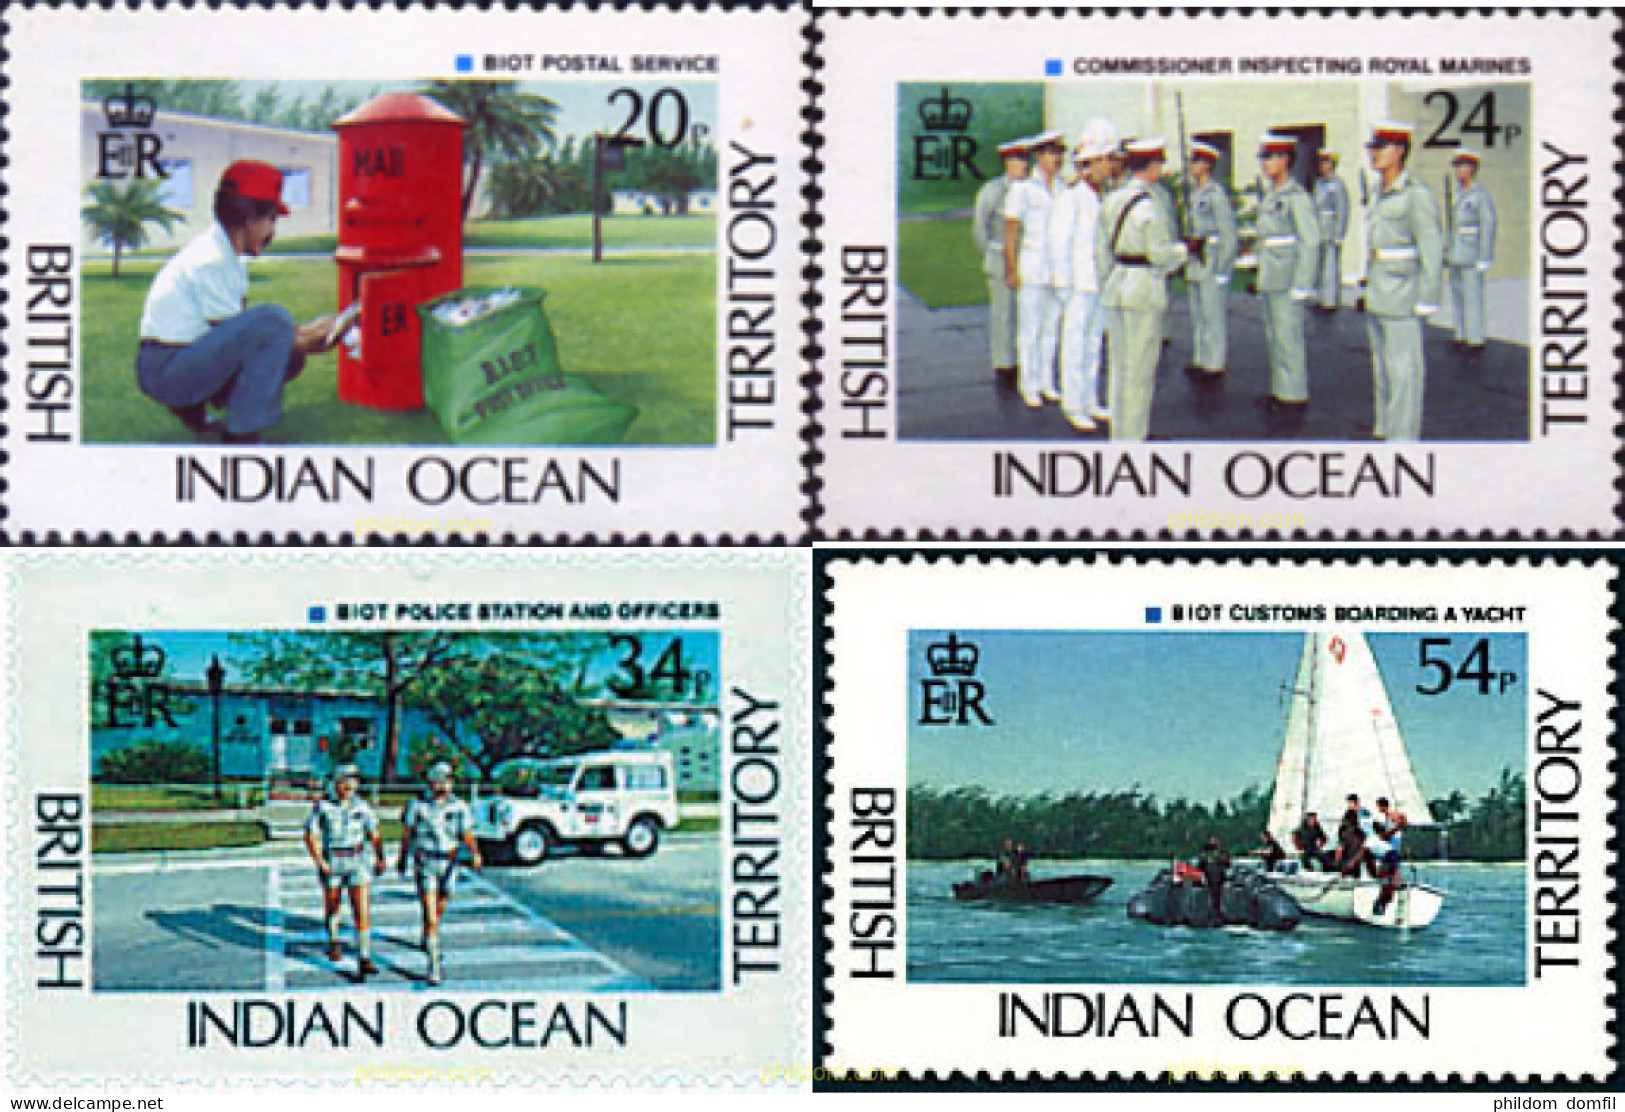 72859 MNH OCEANO INDICO BRITANICO 1991 ADMINISTRACION DEL TERRITORIO - Britisches Territorium Im Indischen Ozean